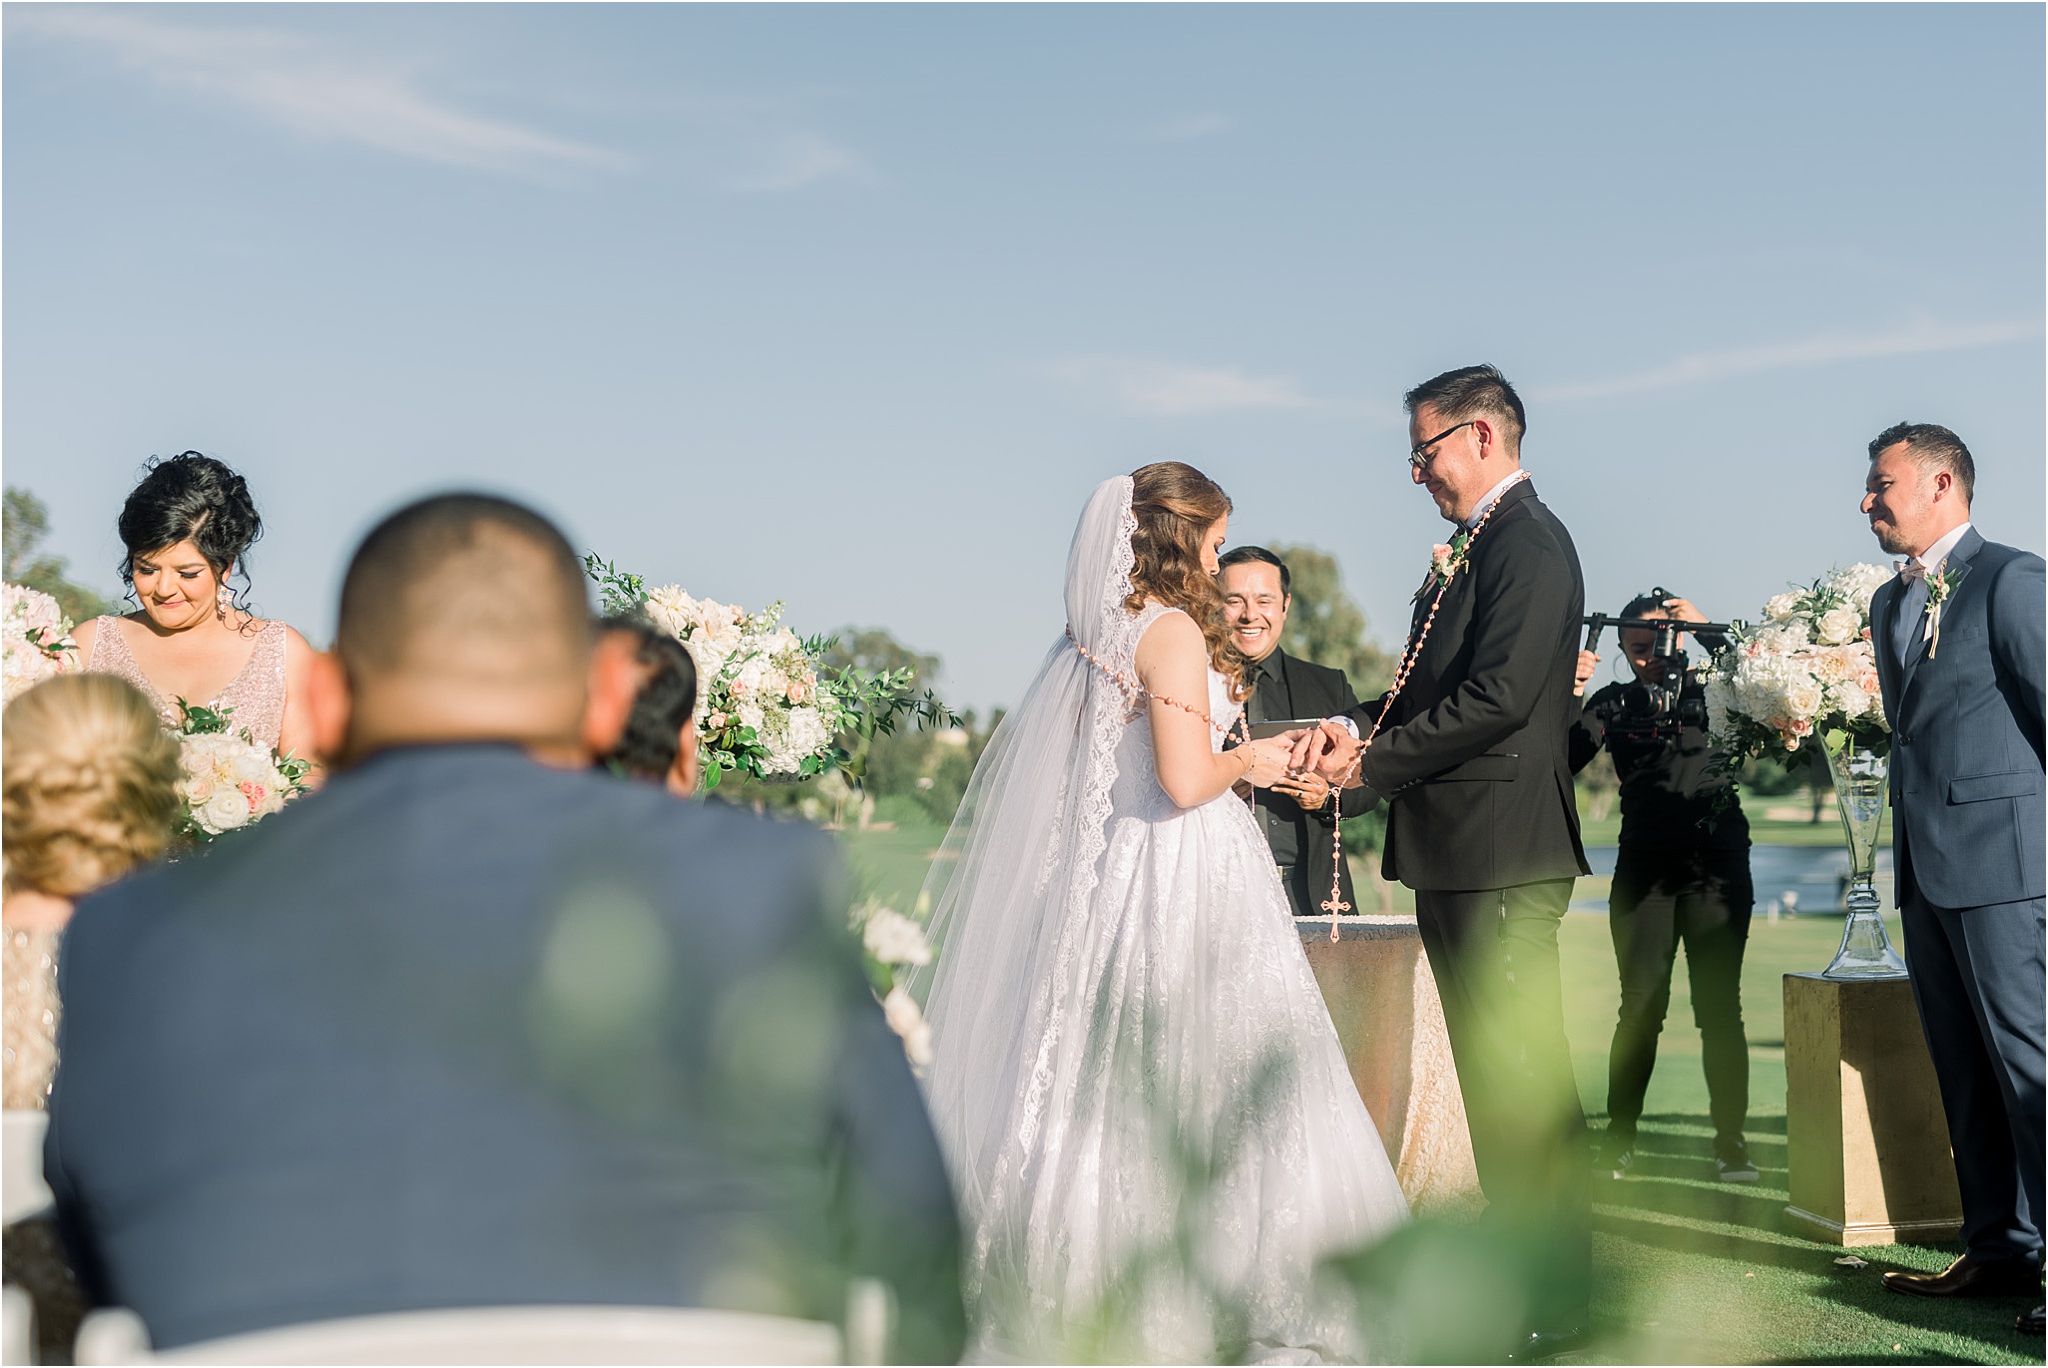 Omni Wedding Photographer | Tucson AZ | Ligia and Arturo ceremony photos | Tucson Wedding Photographer | West End Photography